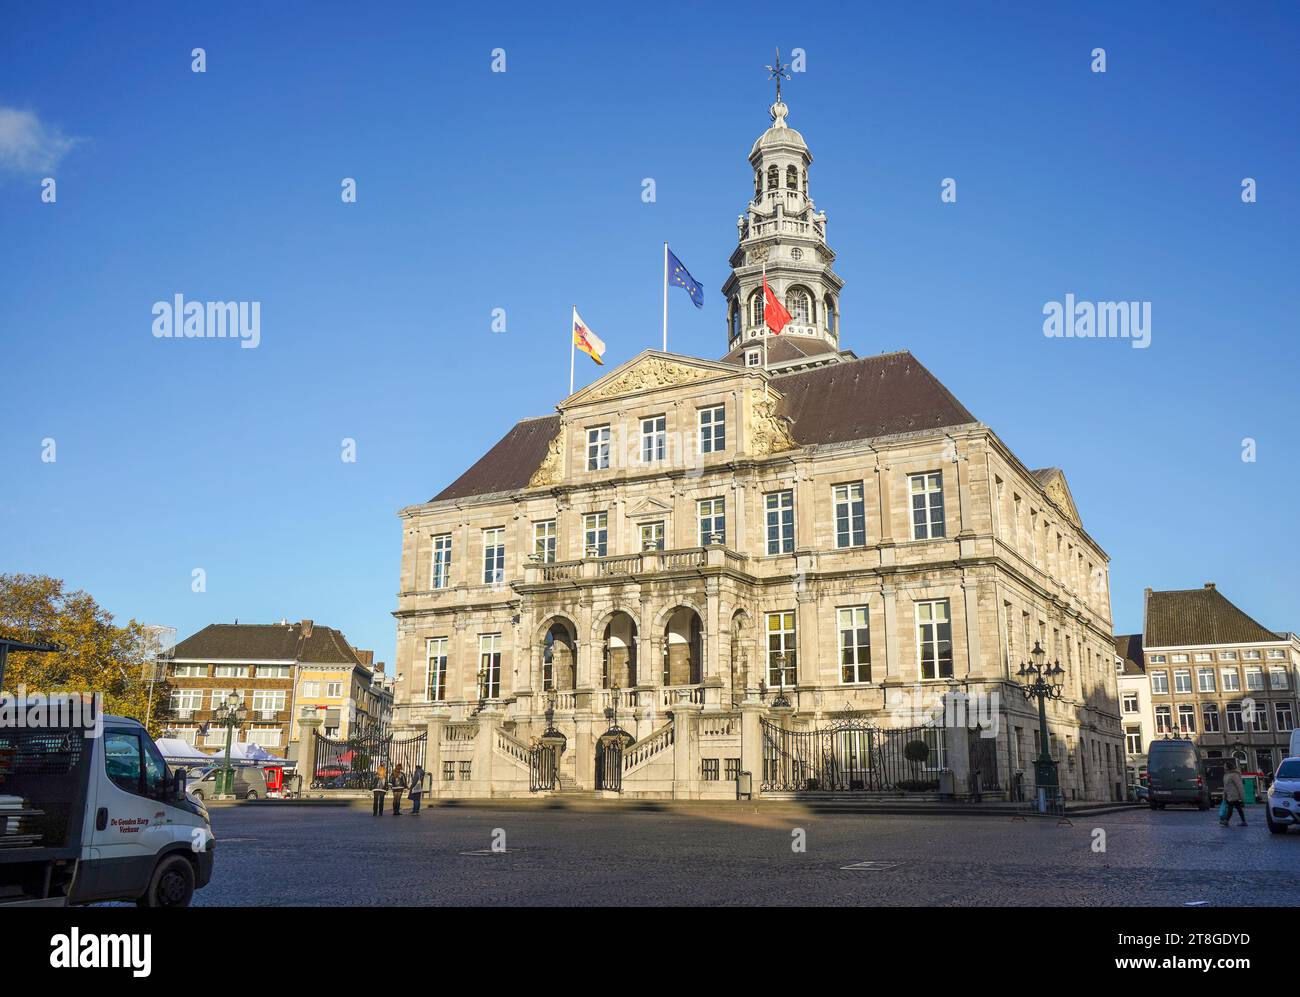 Die City Hall, Rathaus, Stadhuis, am Marktplatz, Maastricht, Limburg, Niederlande. Stockfoto